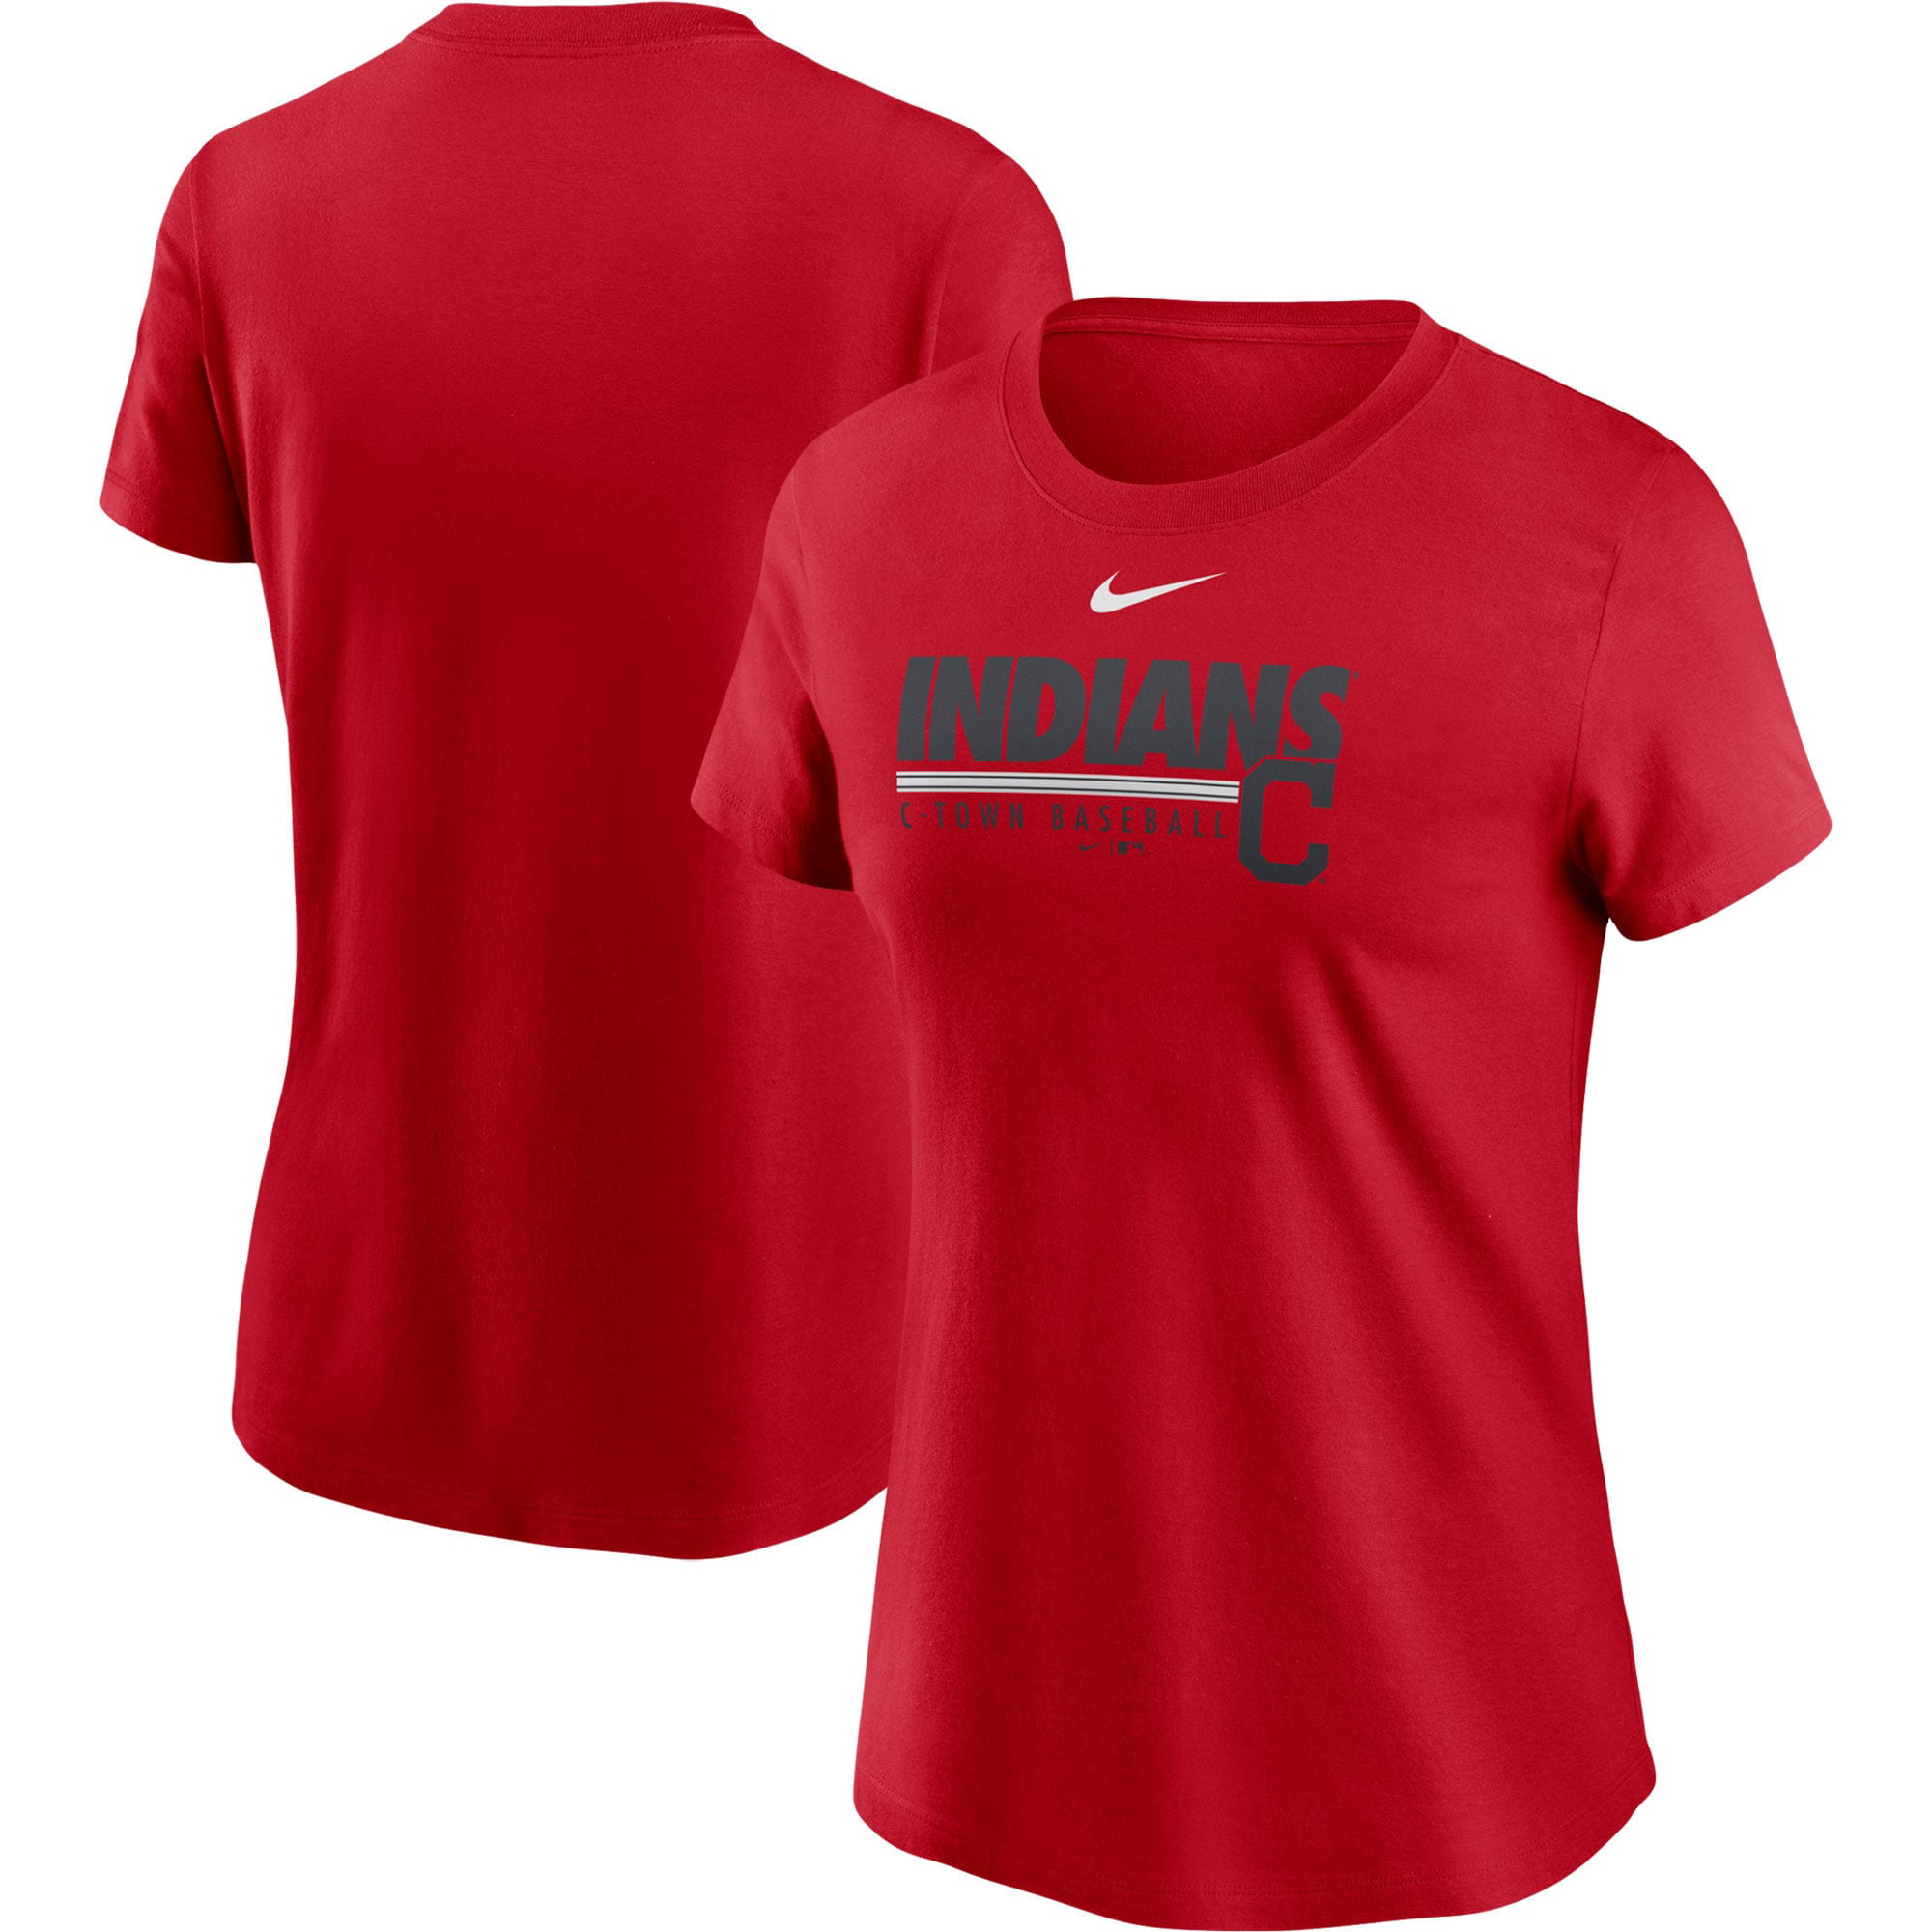 Cleveland Indians Nike Women's Baseball T-Shirt - Red - Walmart.com ...